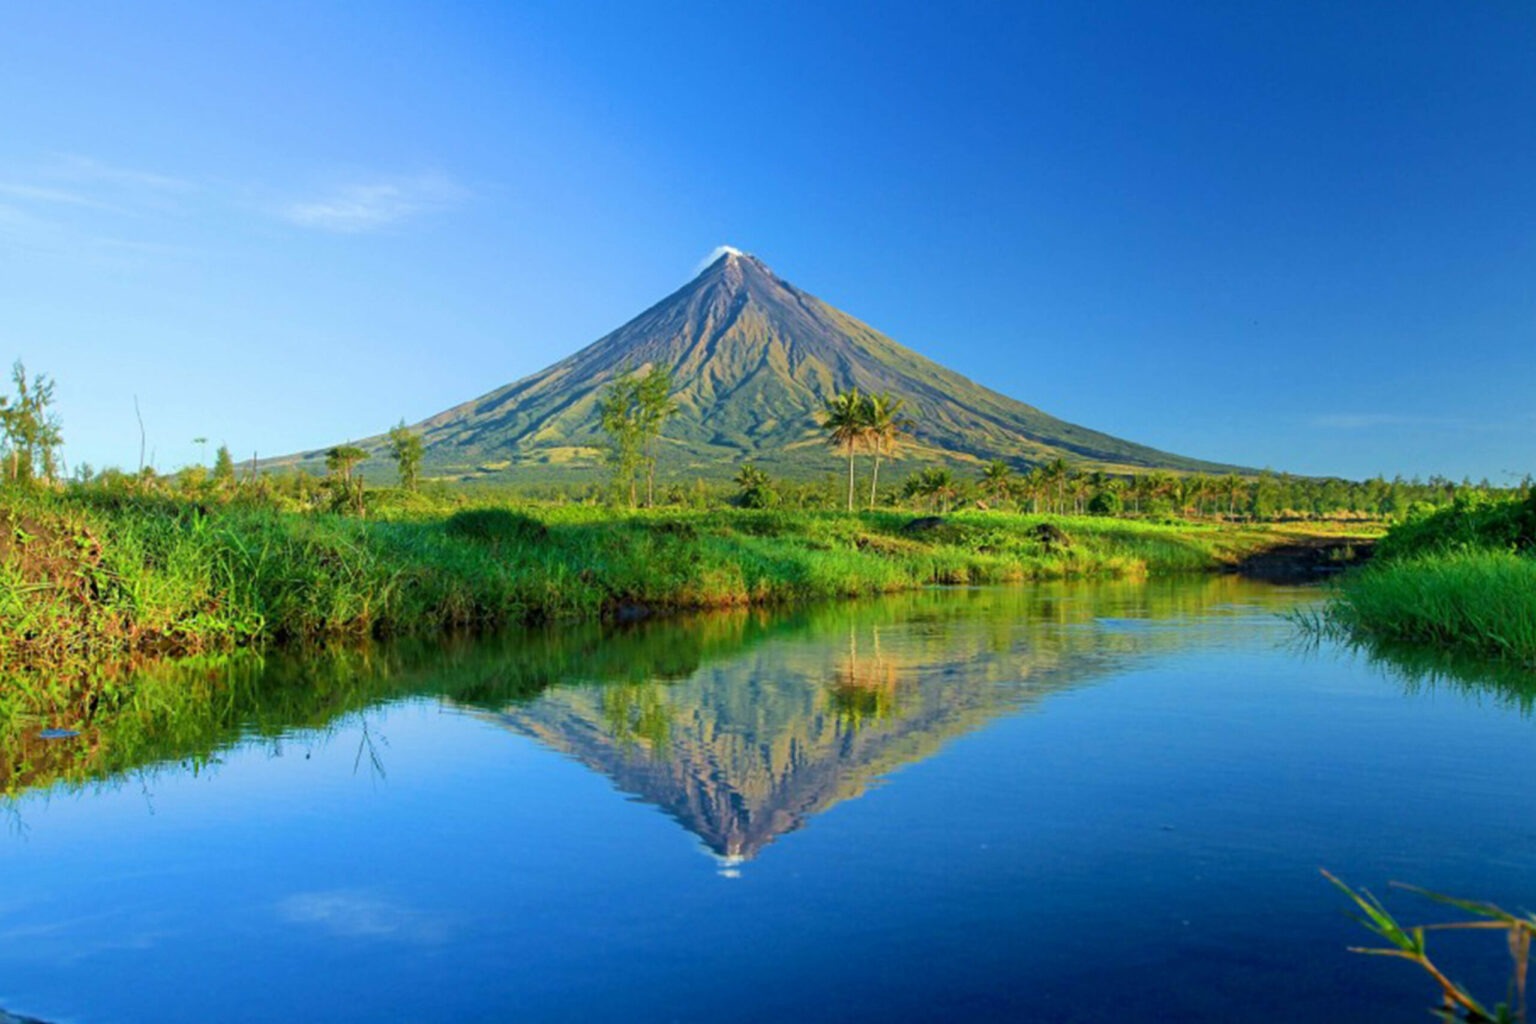 Mayon Volcano, Legazpi